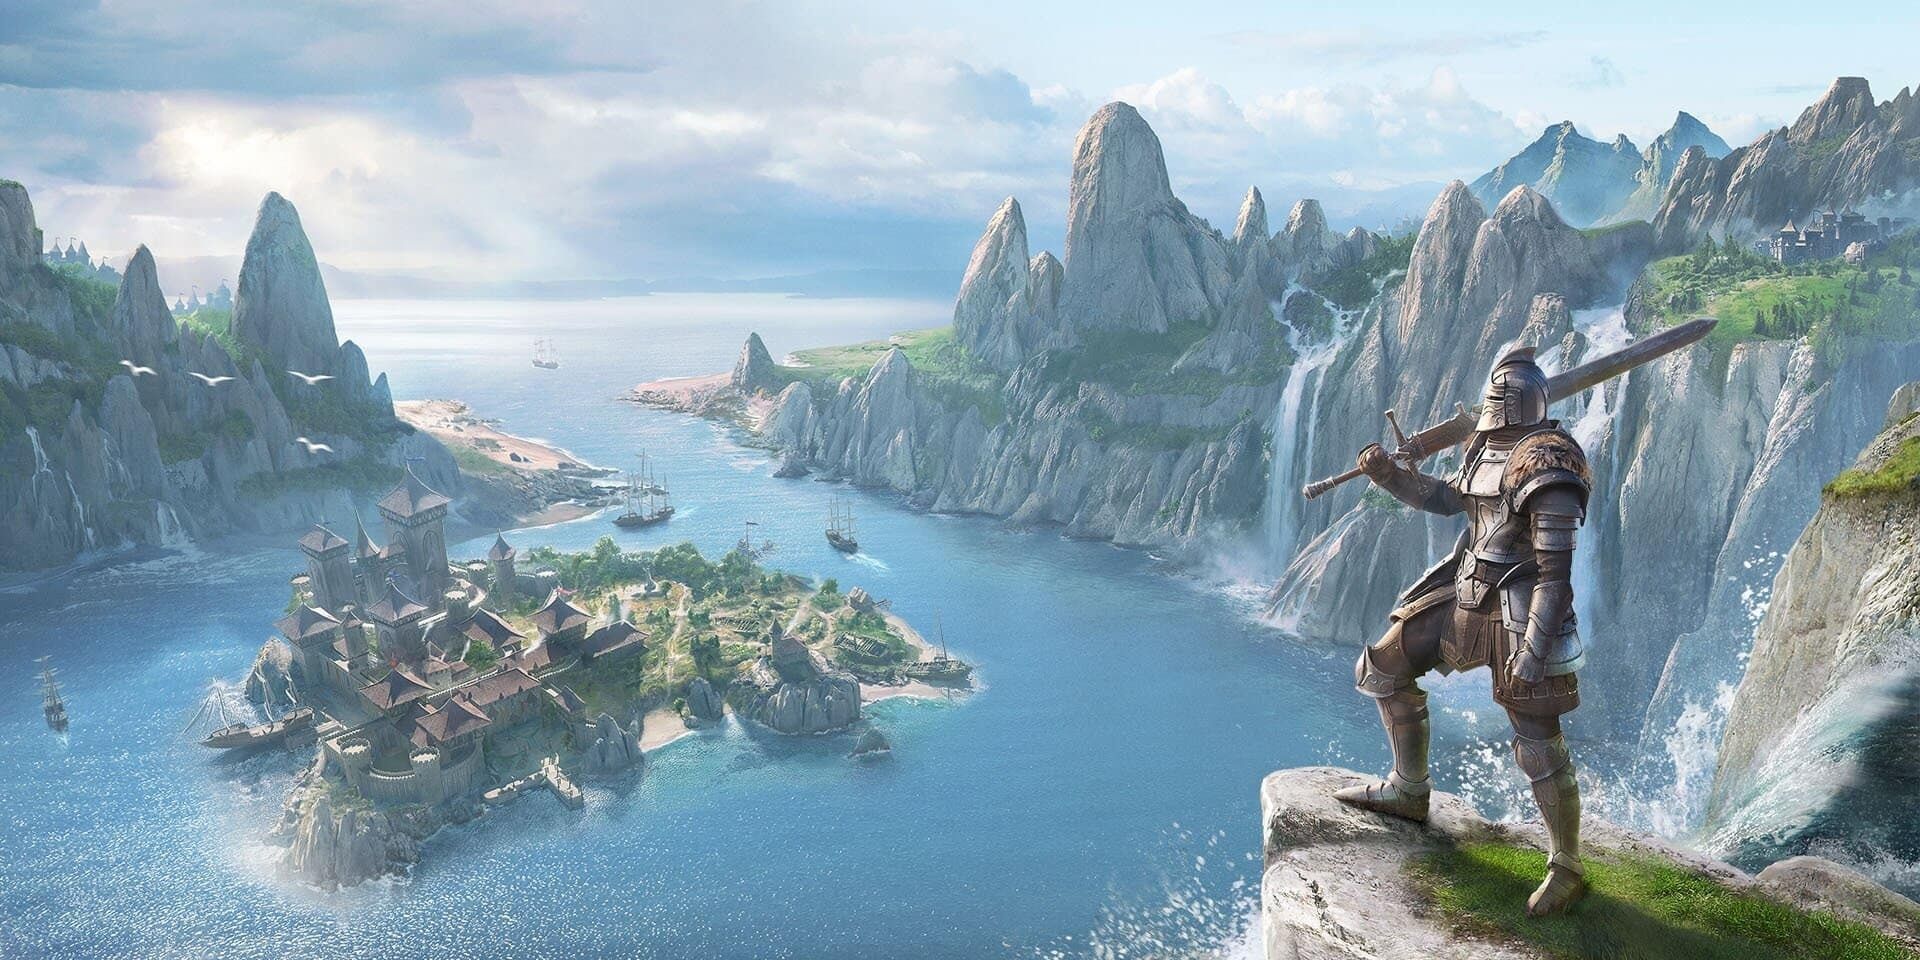 Elder Scrolls Online Character Overlooks an Island City Below 